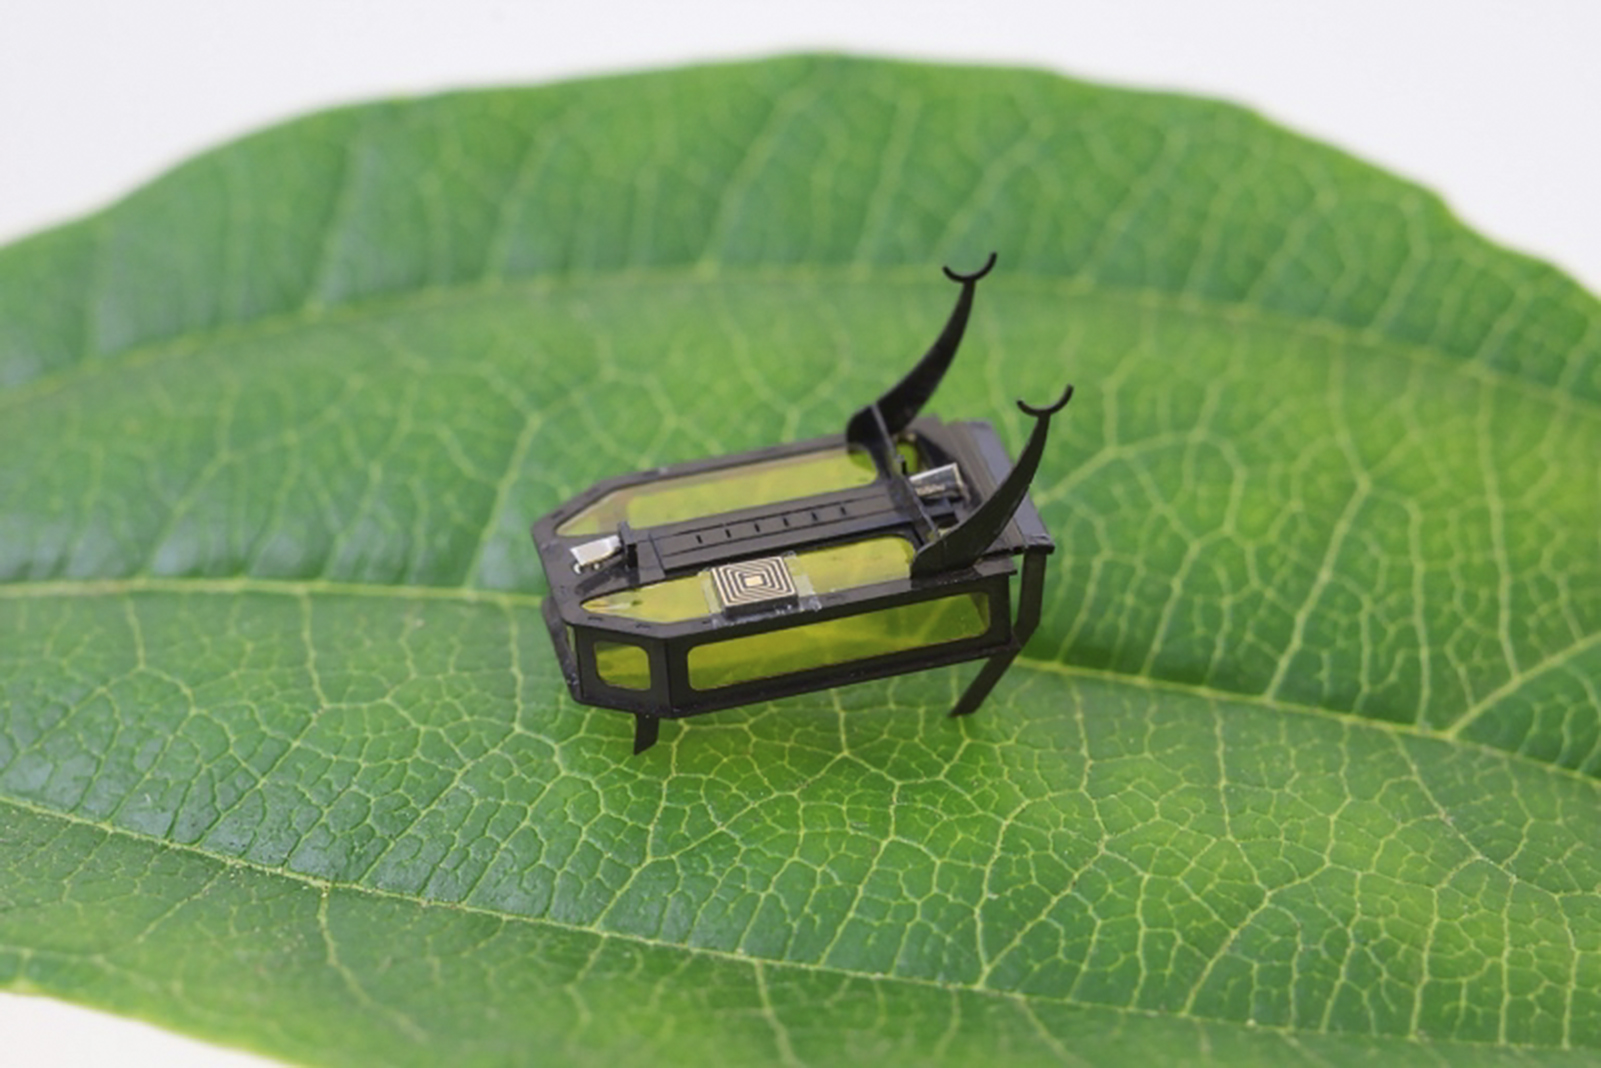 Ce mini-robot scarabée avance, rampe, grimpe et peut porter des charges. © Xiufeng Yang, University of Southern California, AFP